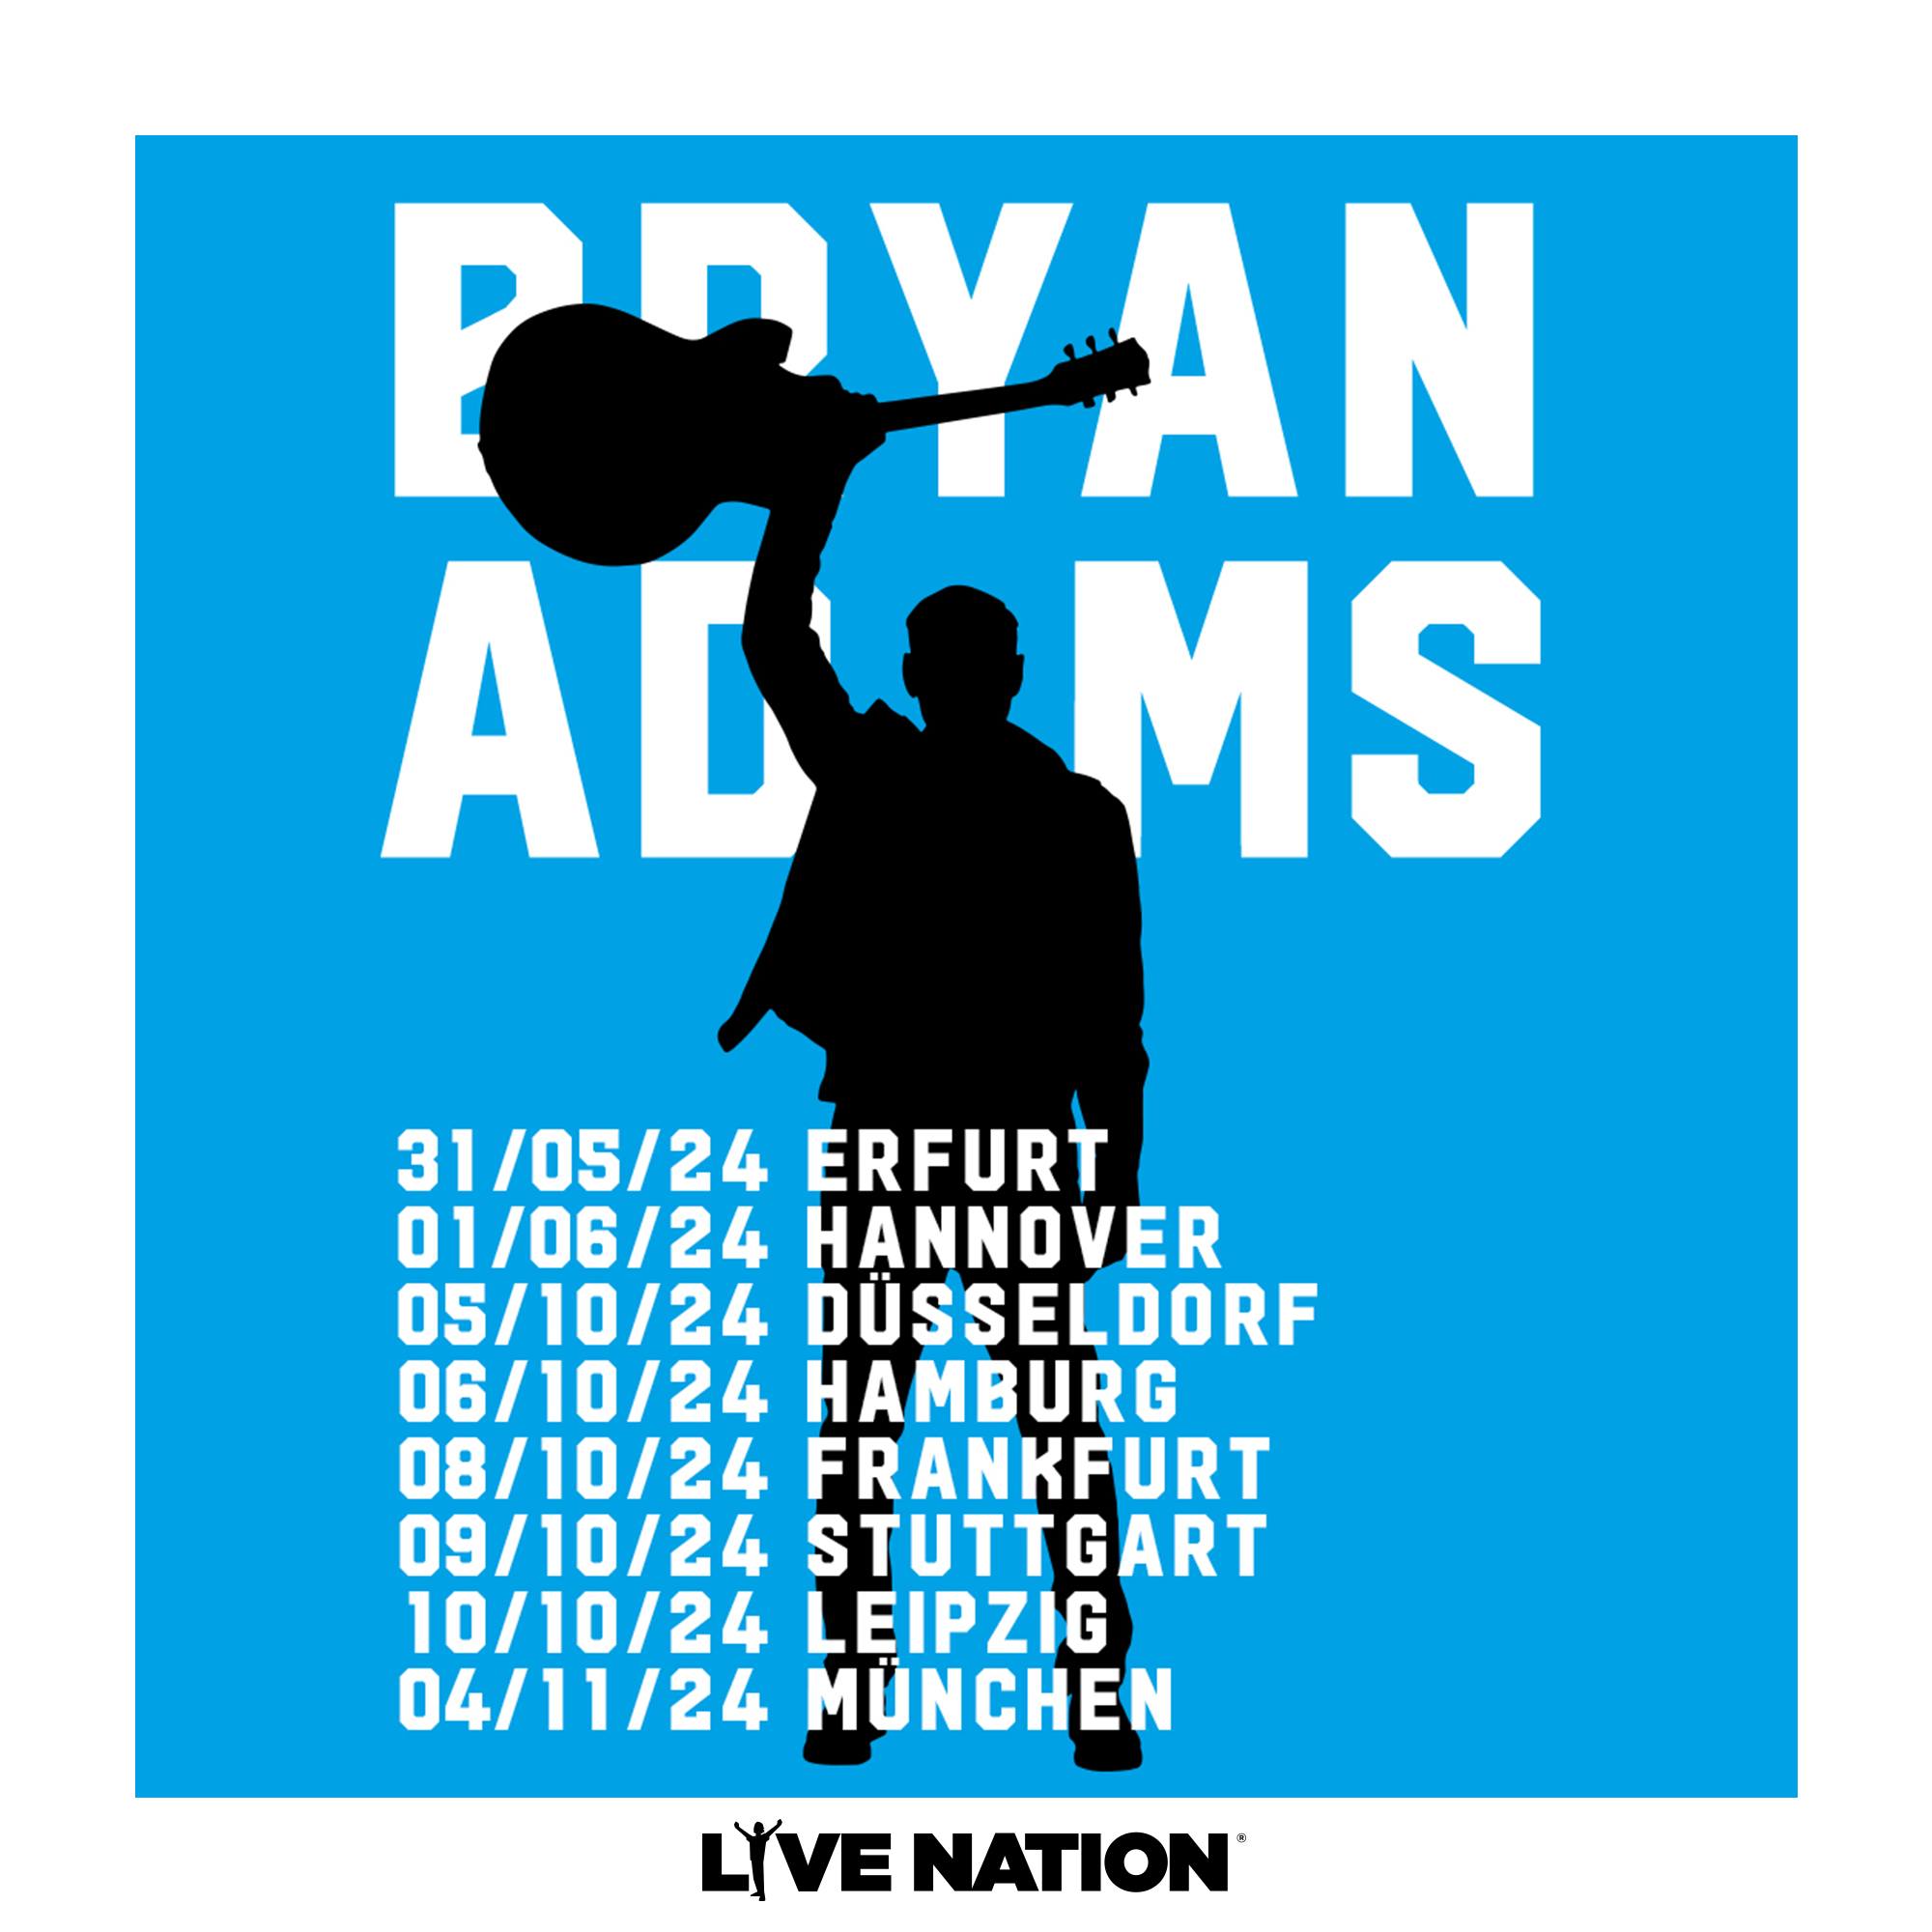 Bryan Adams en Barclays Arena Tickets